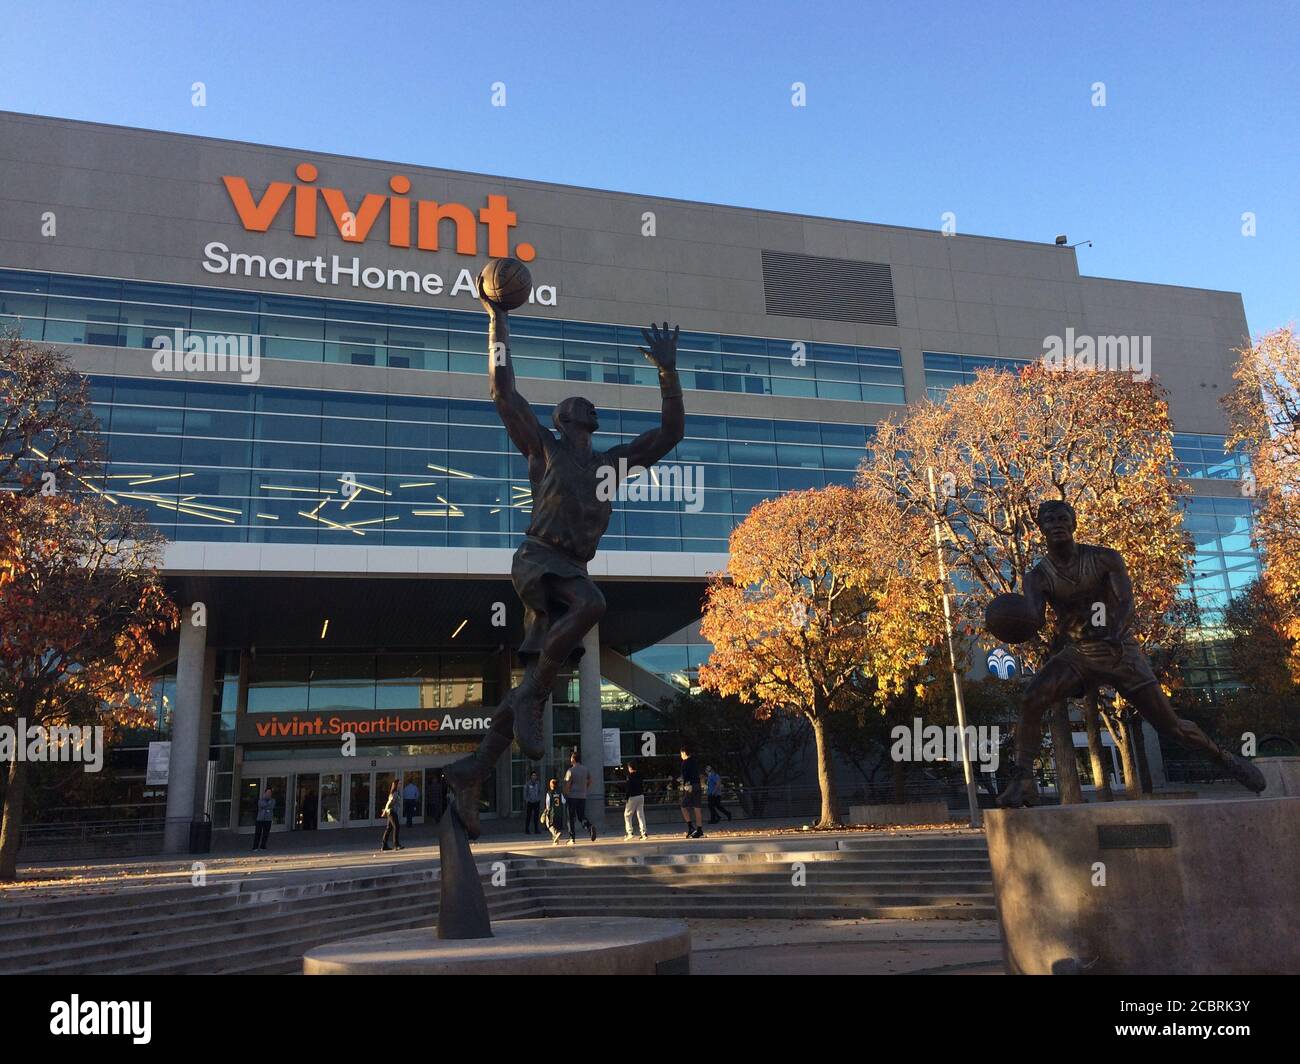 Vivint Smart Home Arena. NBA Basketball-Team Utah Jazz spielen Heimspiele in dieser Arena. Clublegenden Karl Malone und John Stockton Statuen. Stockfoto